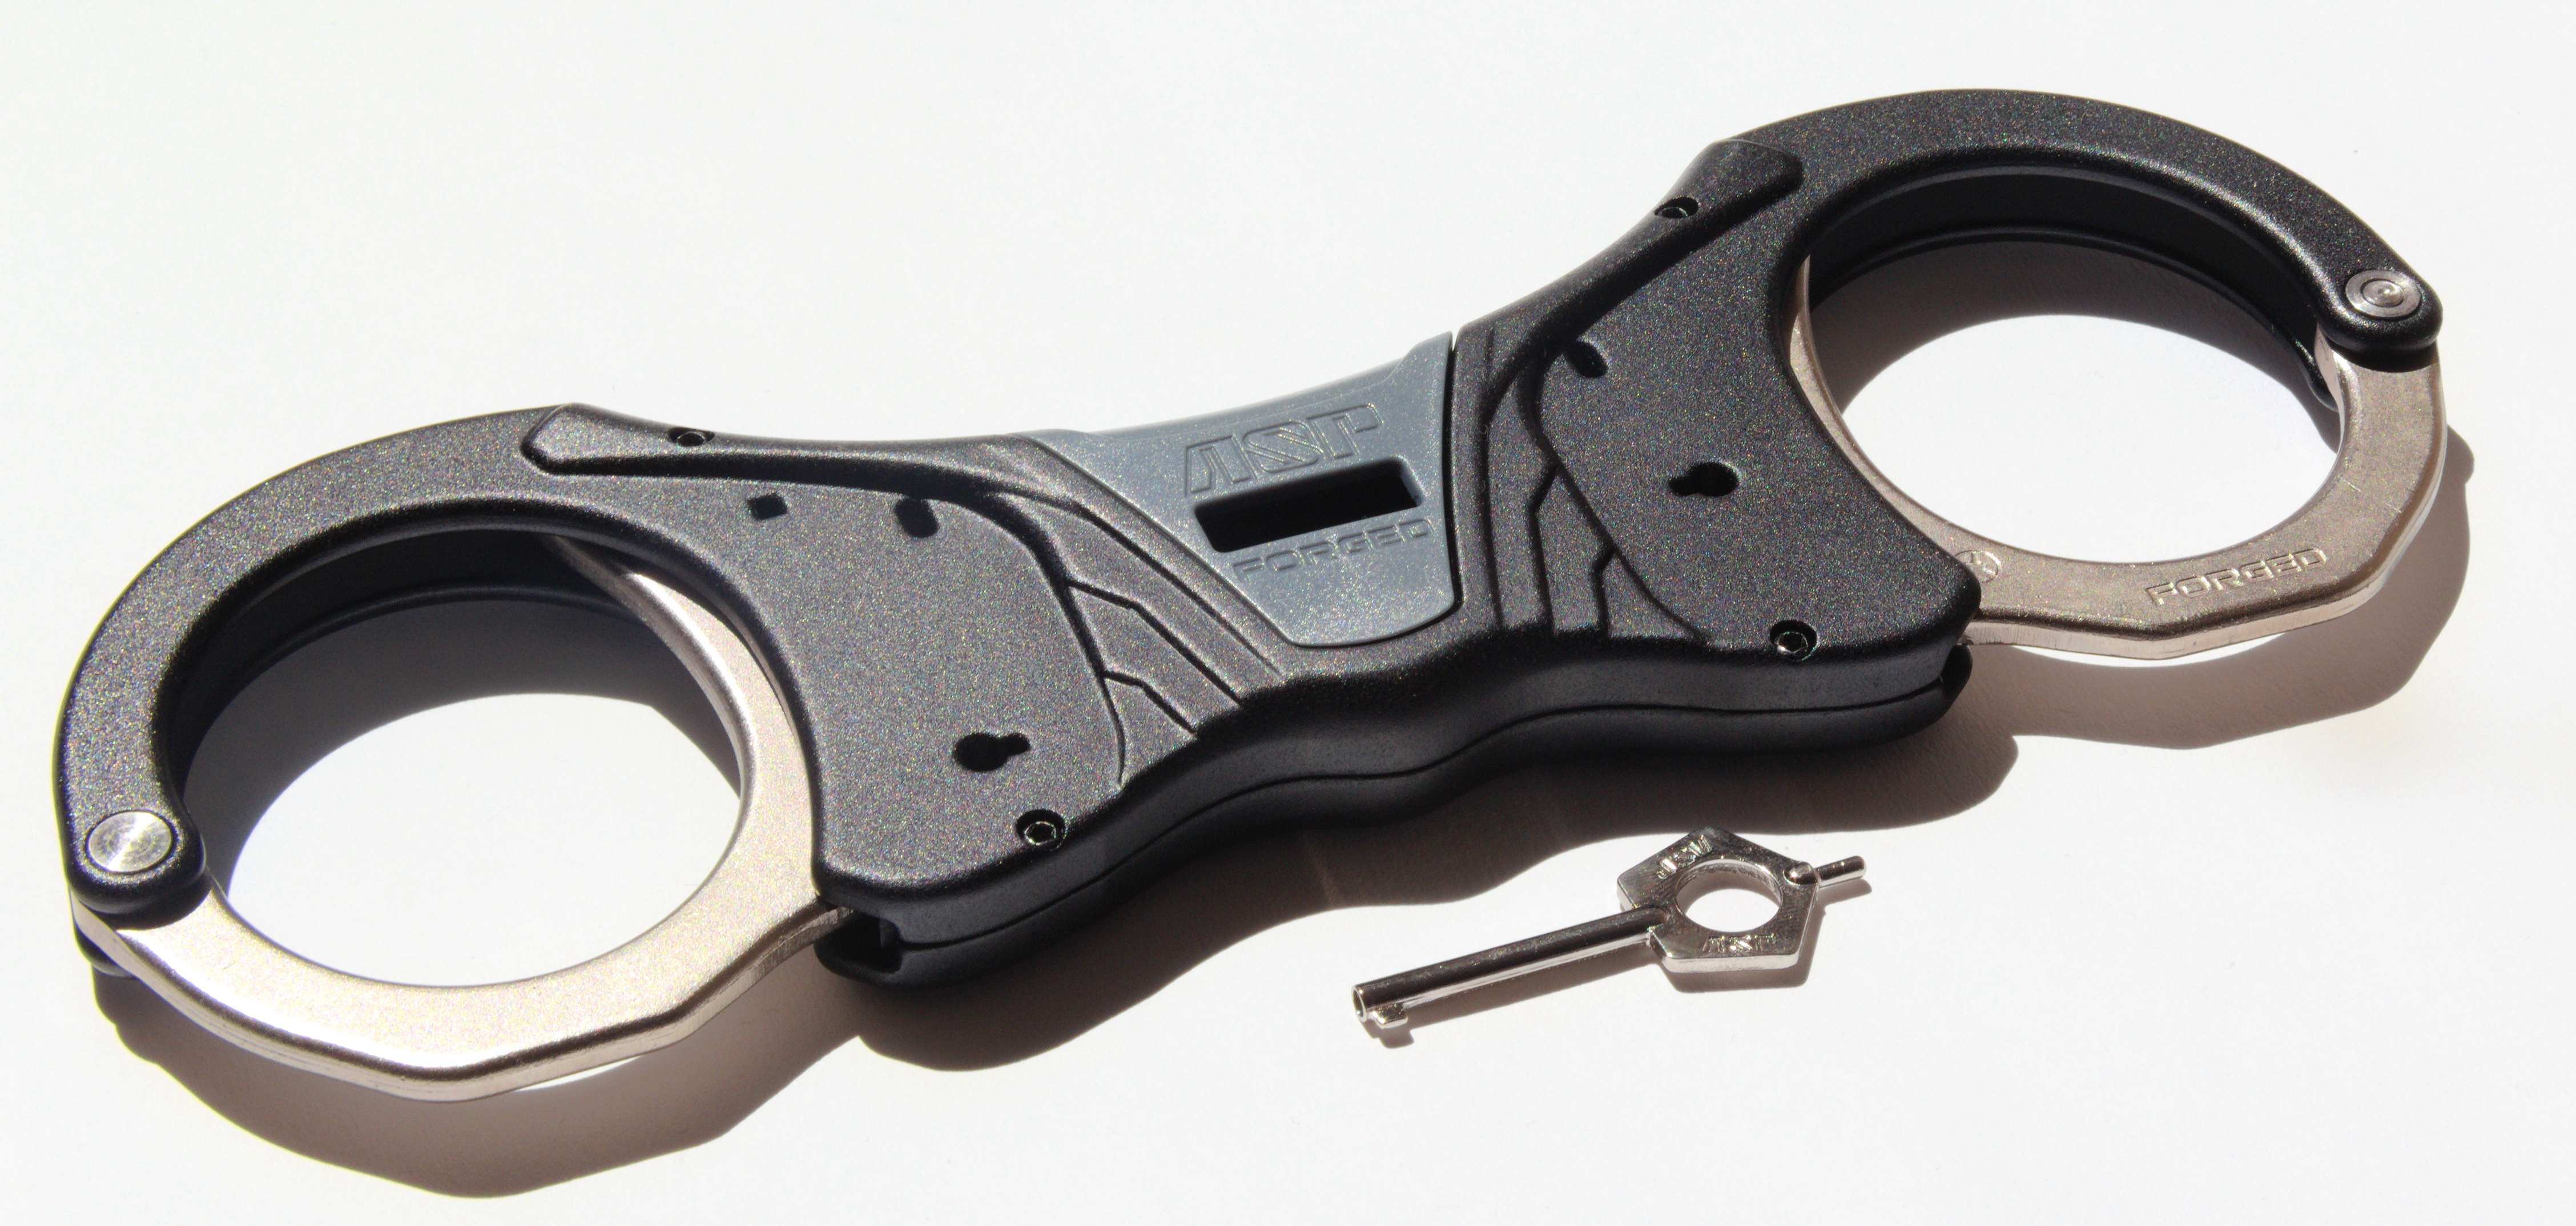 ASP Identifier Steel Rigid Ultra Cuffs Grey (1 Pawl) - 56022 / Model 600 Grau 